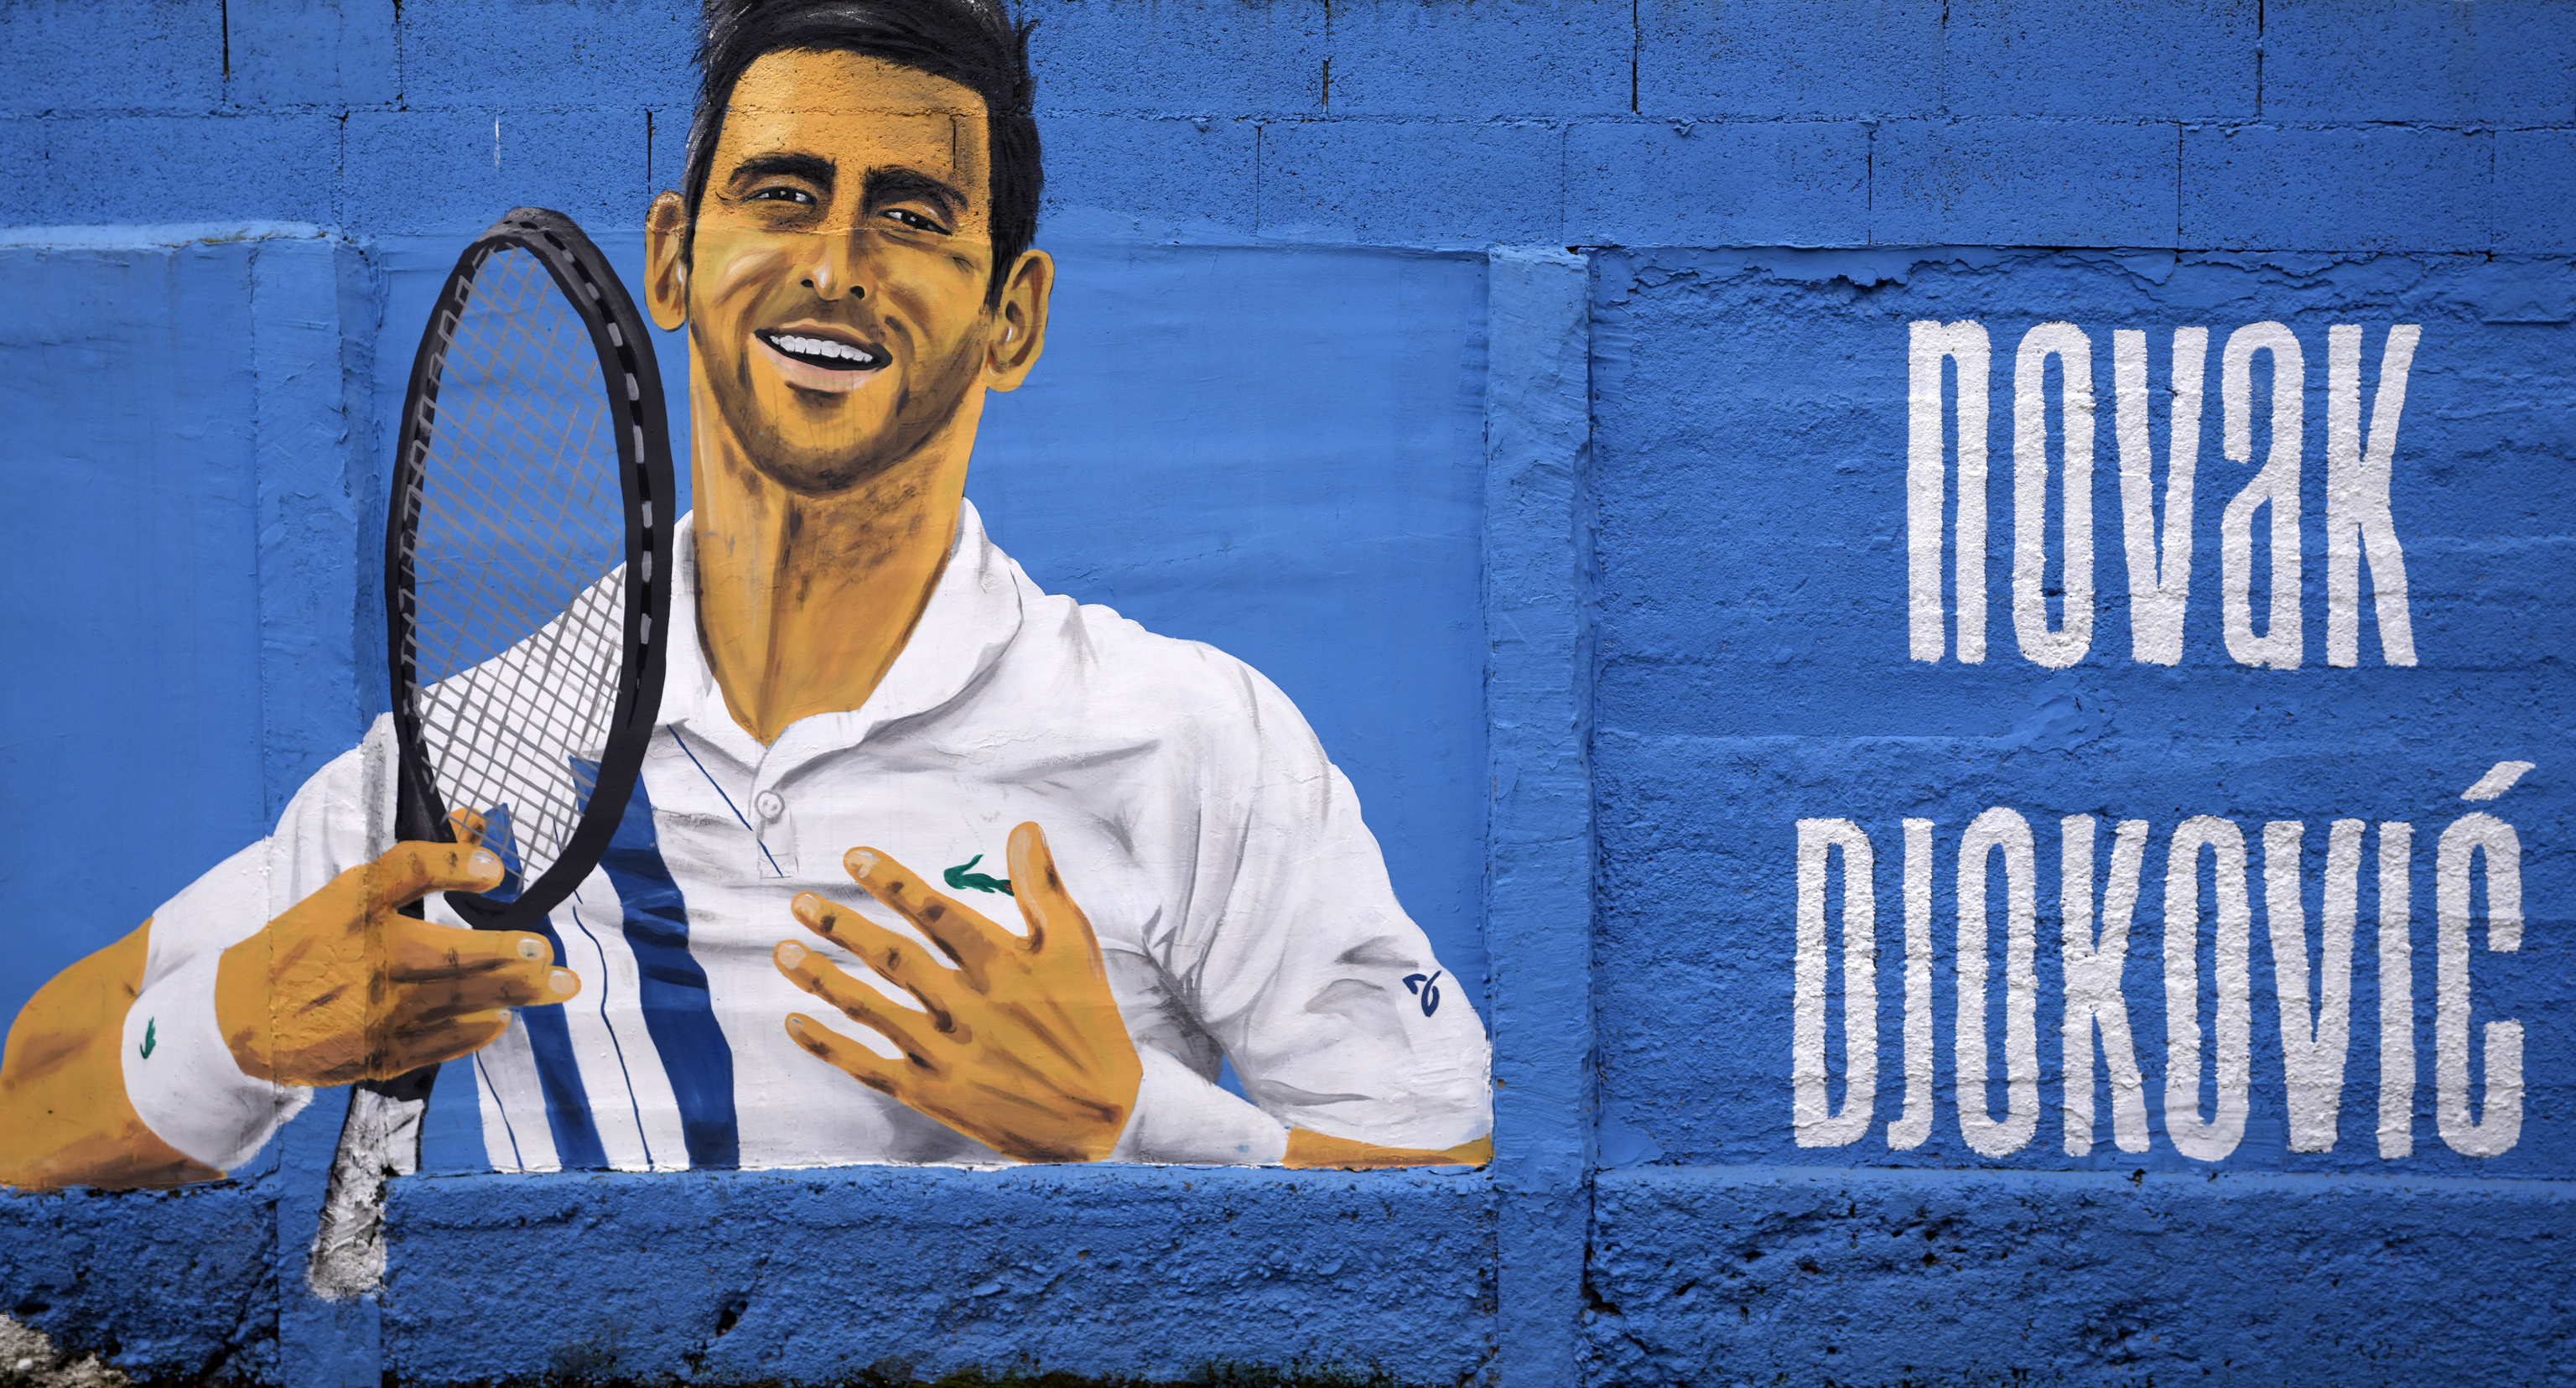 Pintada en homenaje al tenista serbio Djokovic.